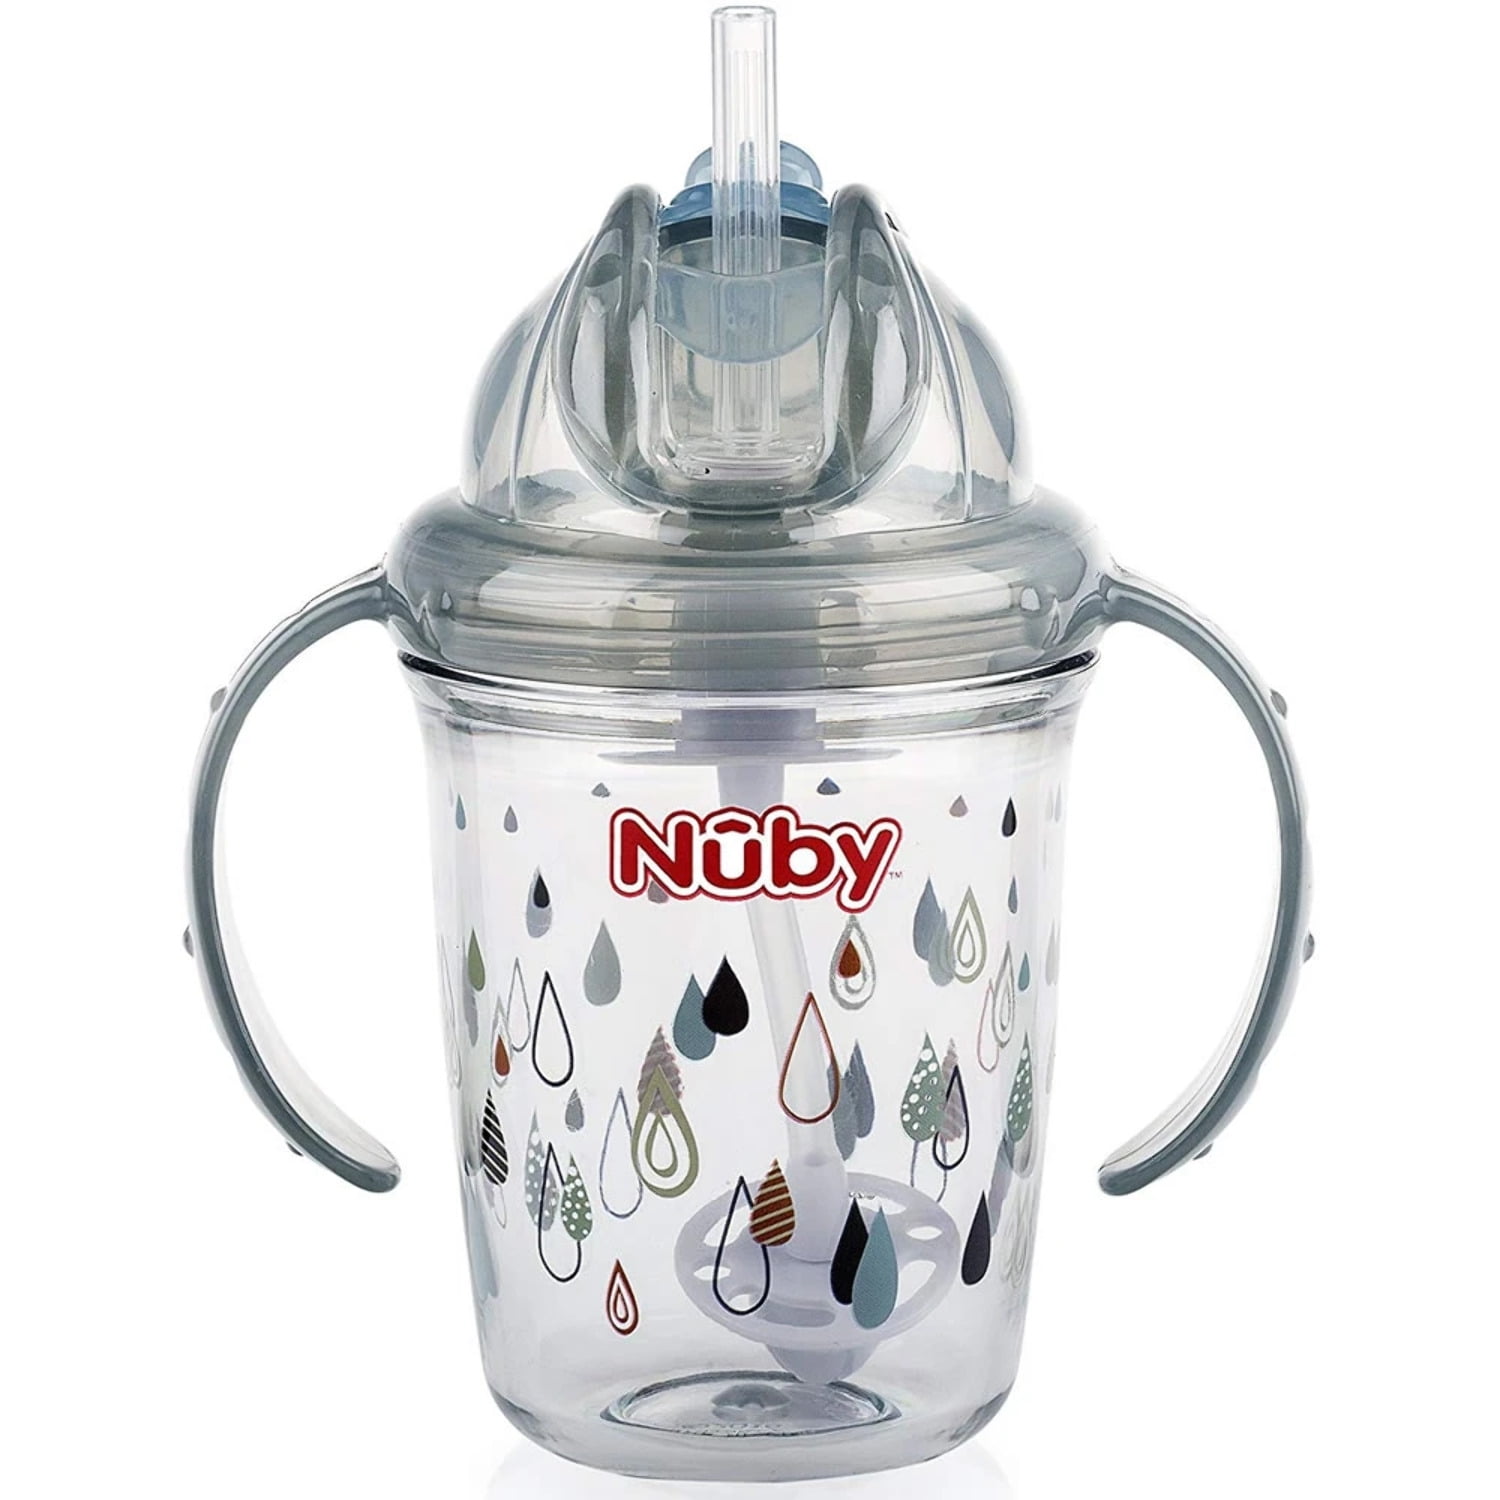 Nuby Active Sipeez Flip 'n Sip Sipper Cup (10 oz.) - Walmart.com